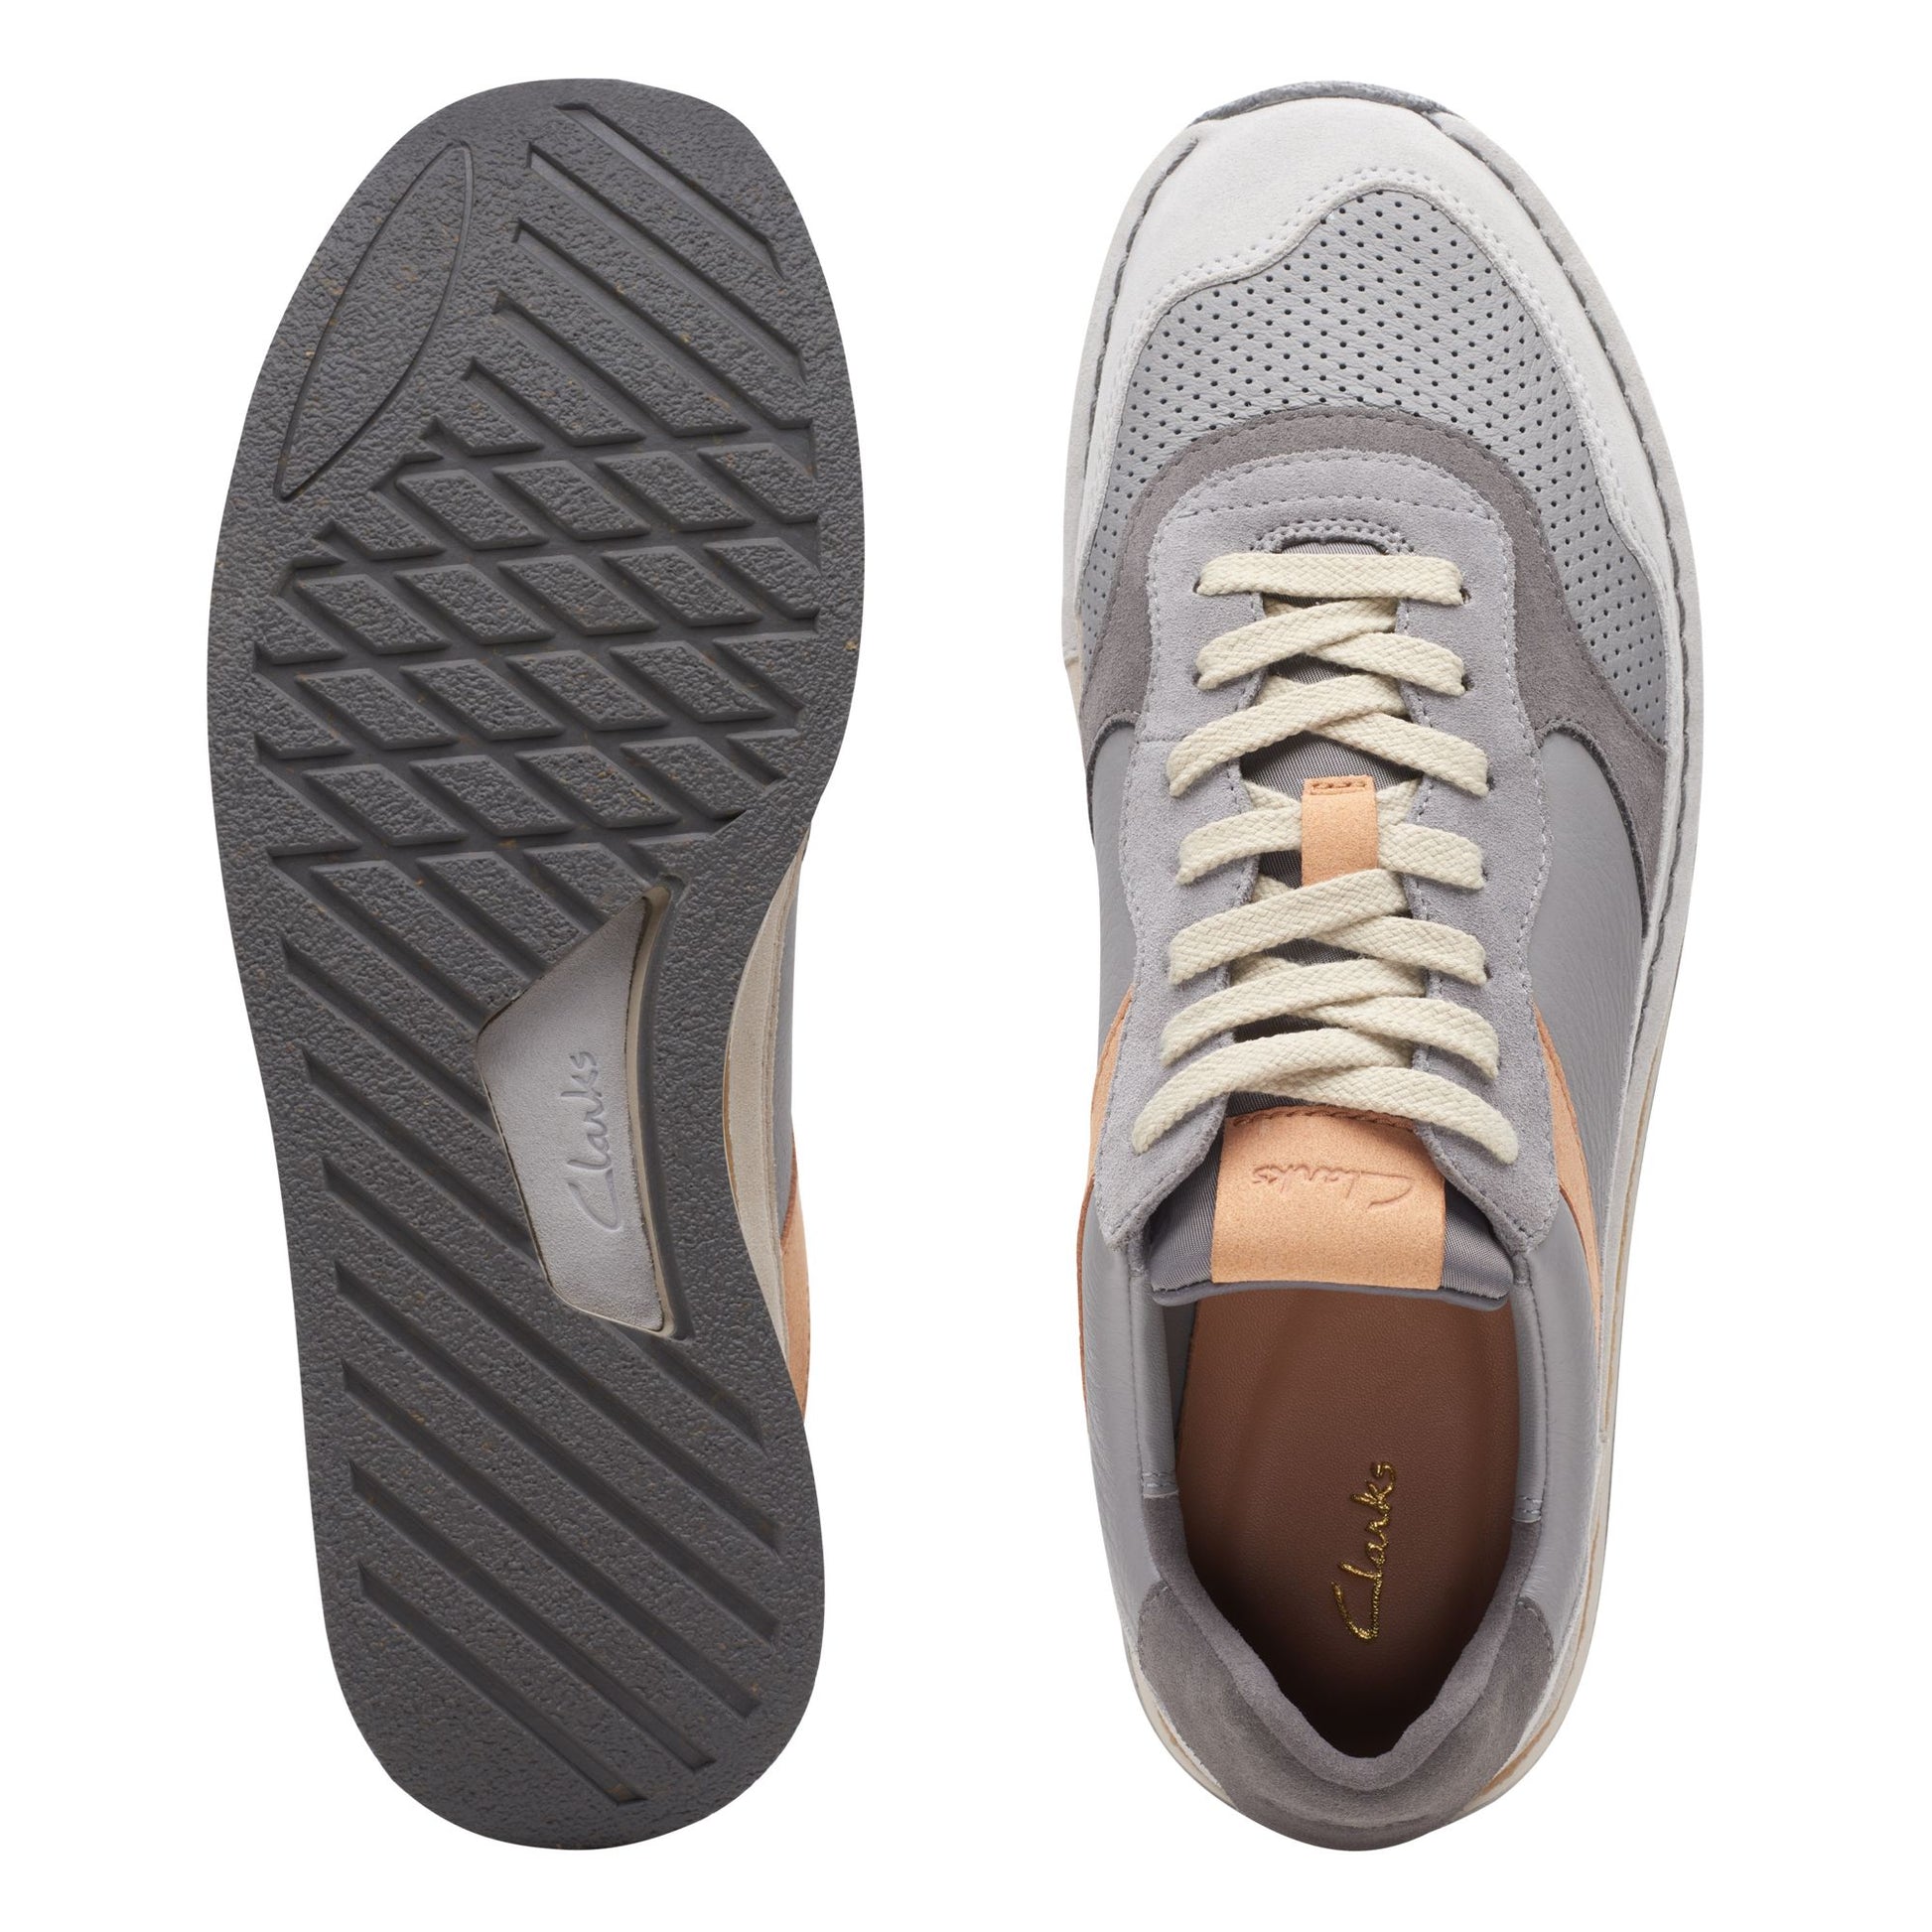 Sneakers De La Marca Clarks Para Hombre Modelo Craftrun Tor Grey En Color Gris